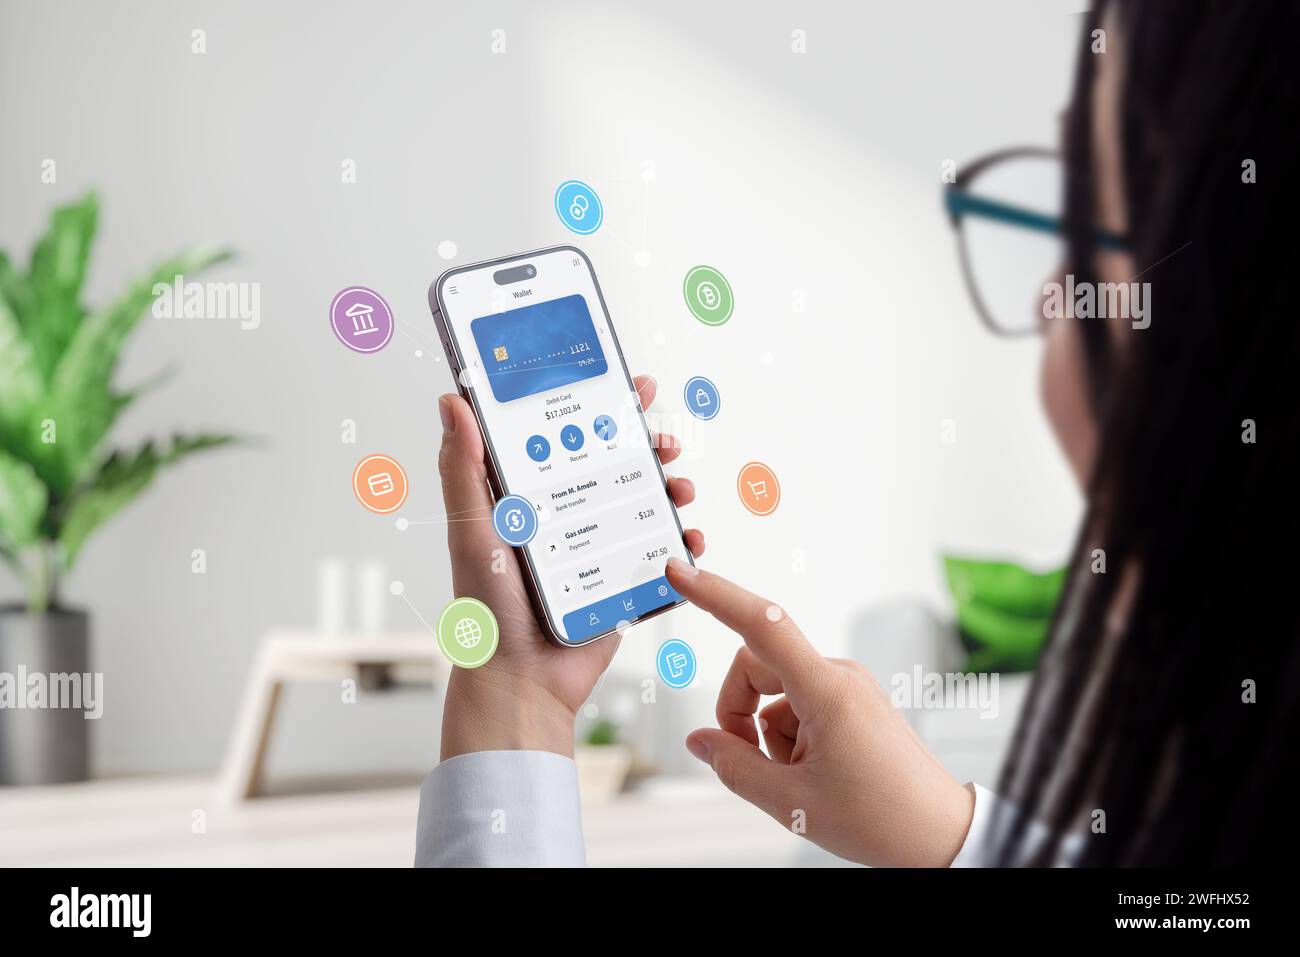 Frau hält ein Smartphone mit einer Fintech-App, umgeben von Konzeptballons mit Fintech-Service-Ikonen. Dynamische Grafik verkörpert moderne Finanzprodukte Stockfoto